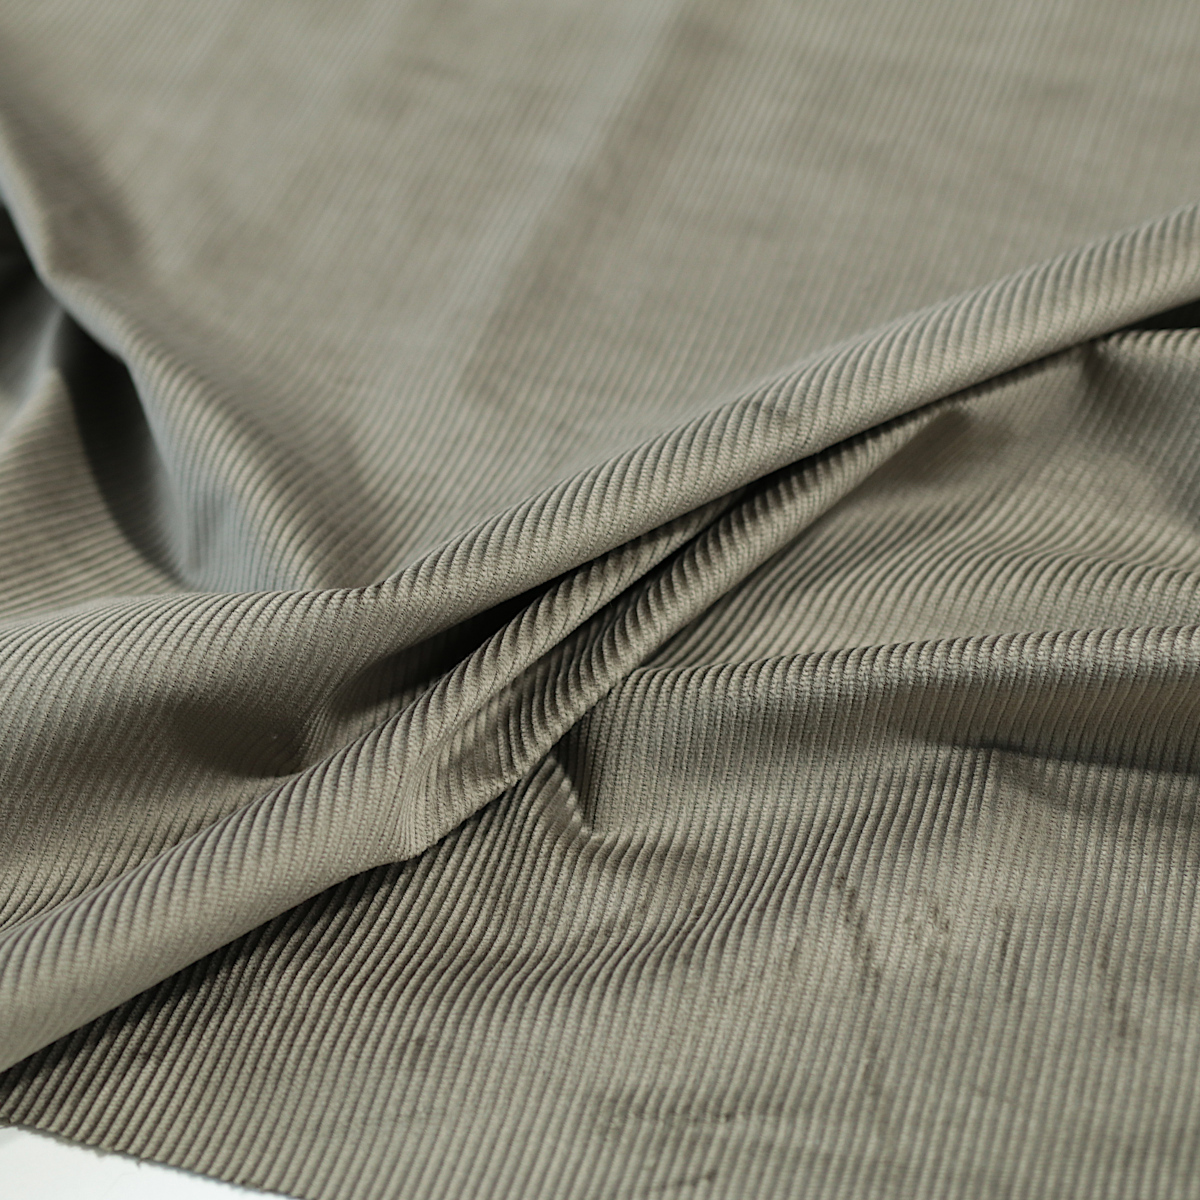 Mikro CORD BaumwollStoff fein samtig weich Bekleidung Jacke Rock Hemd Grau Braun